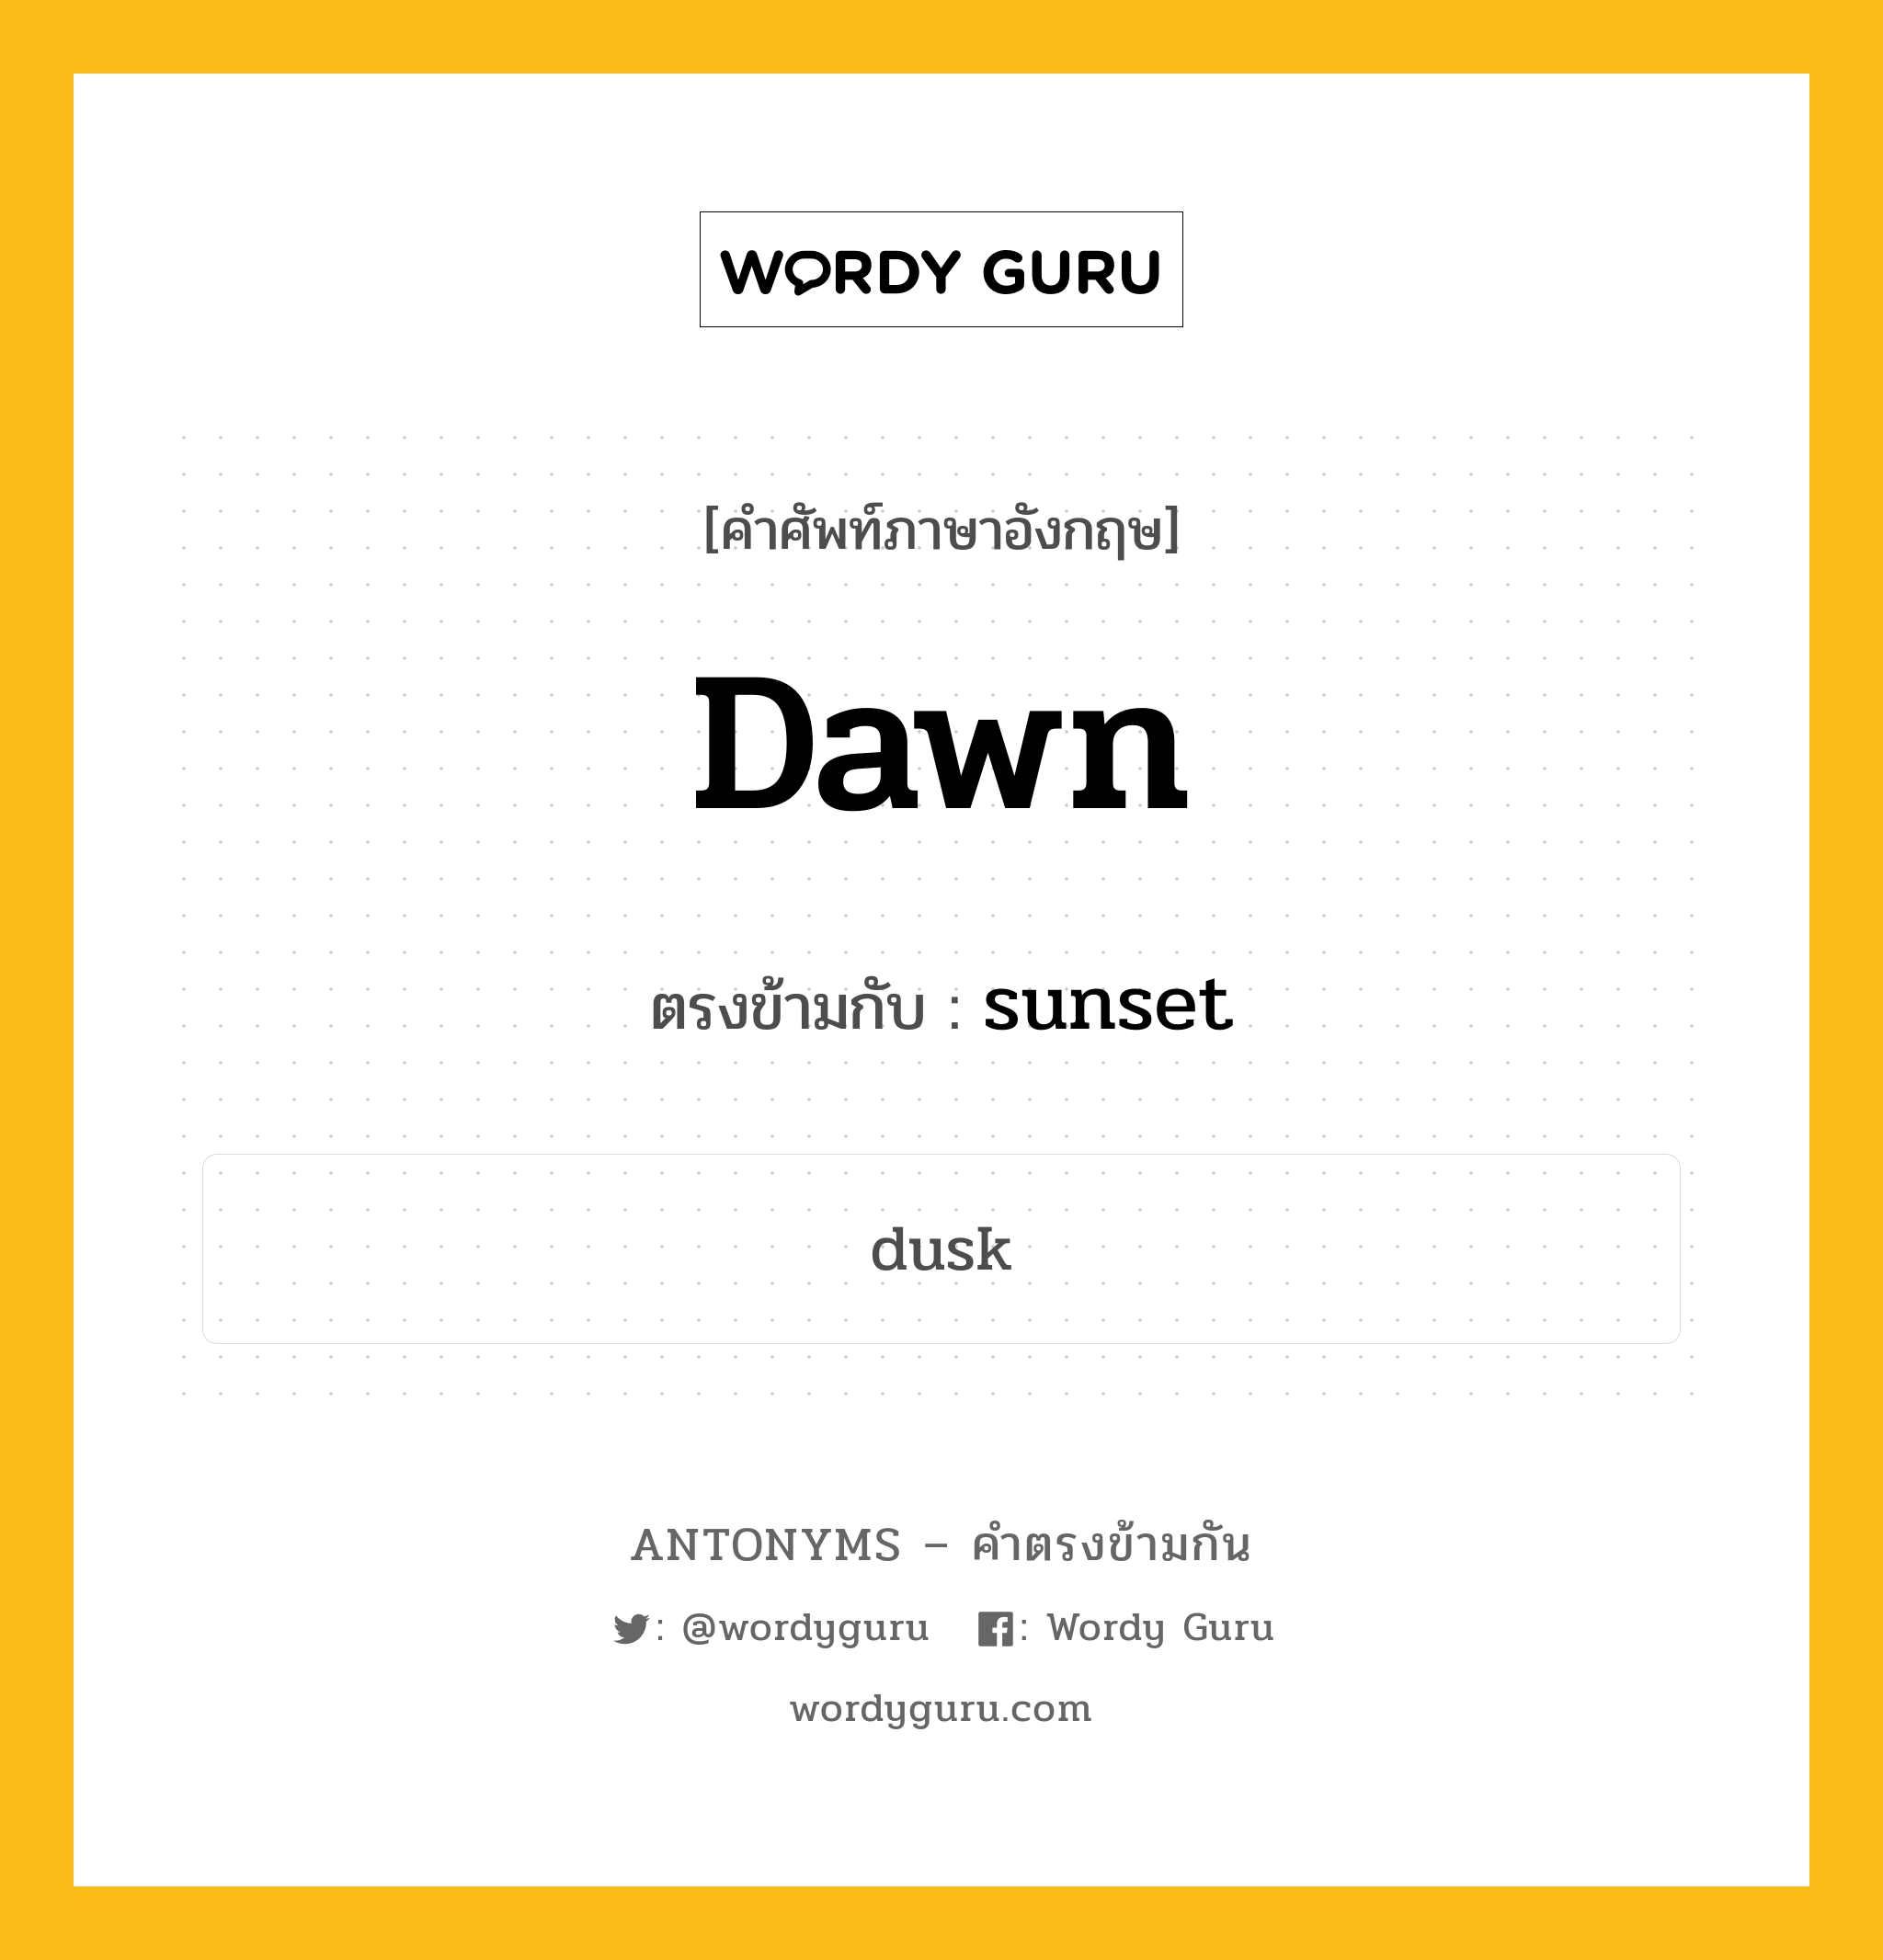 dawn เป็นคำตรงข้ามกับคำไหนบ้าง?, คำศัพท์ภาษาอังกฤษ dawn ตรงข้ามกับ sunset หมวด sunset